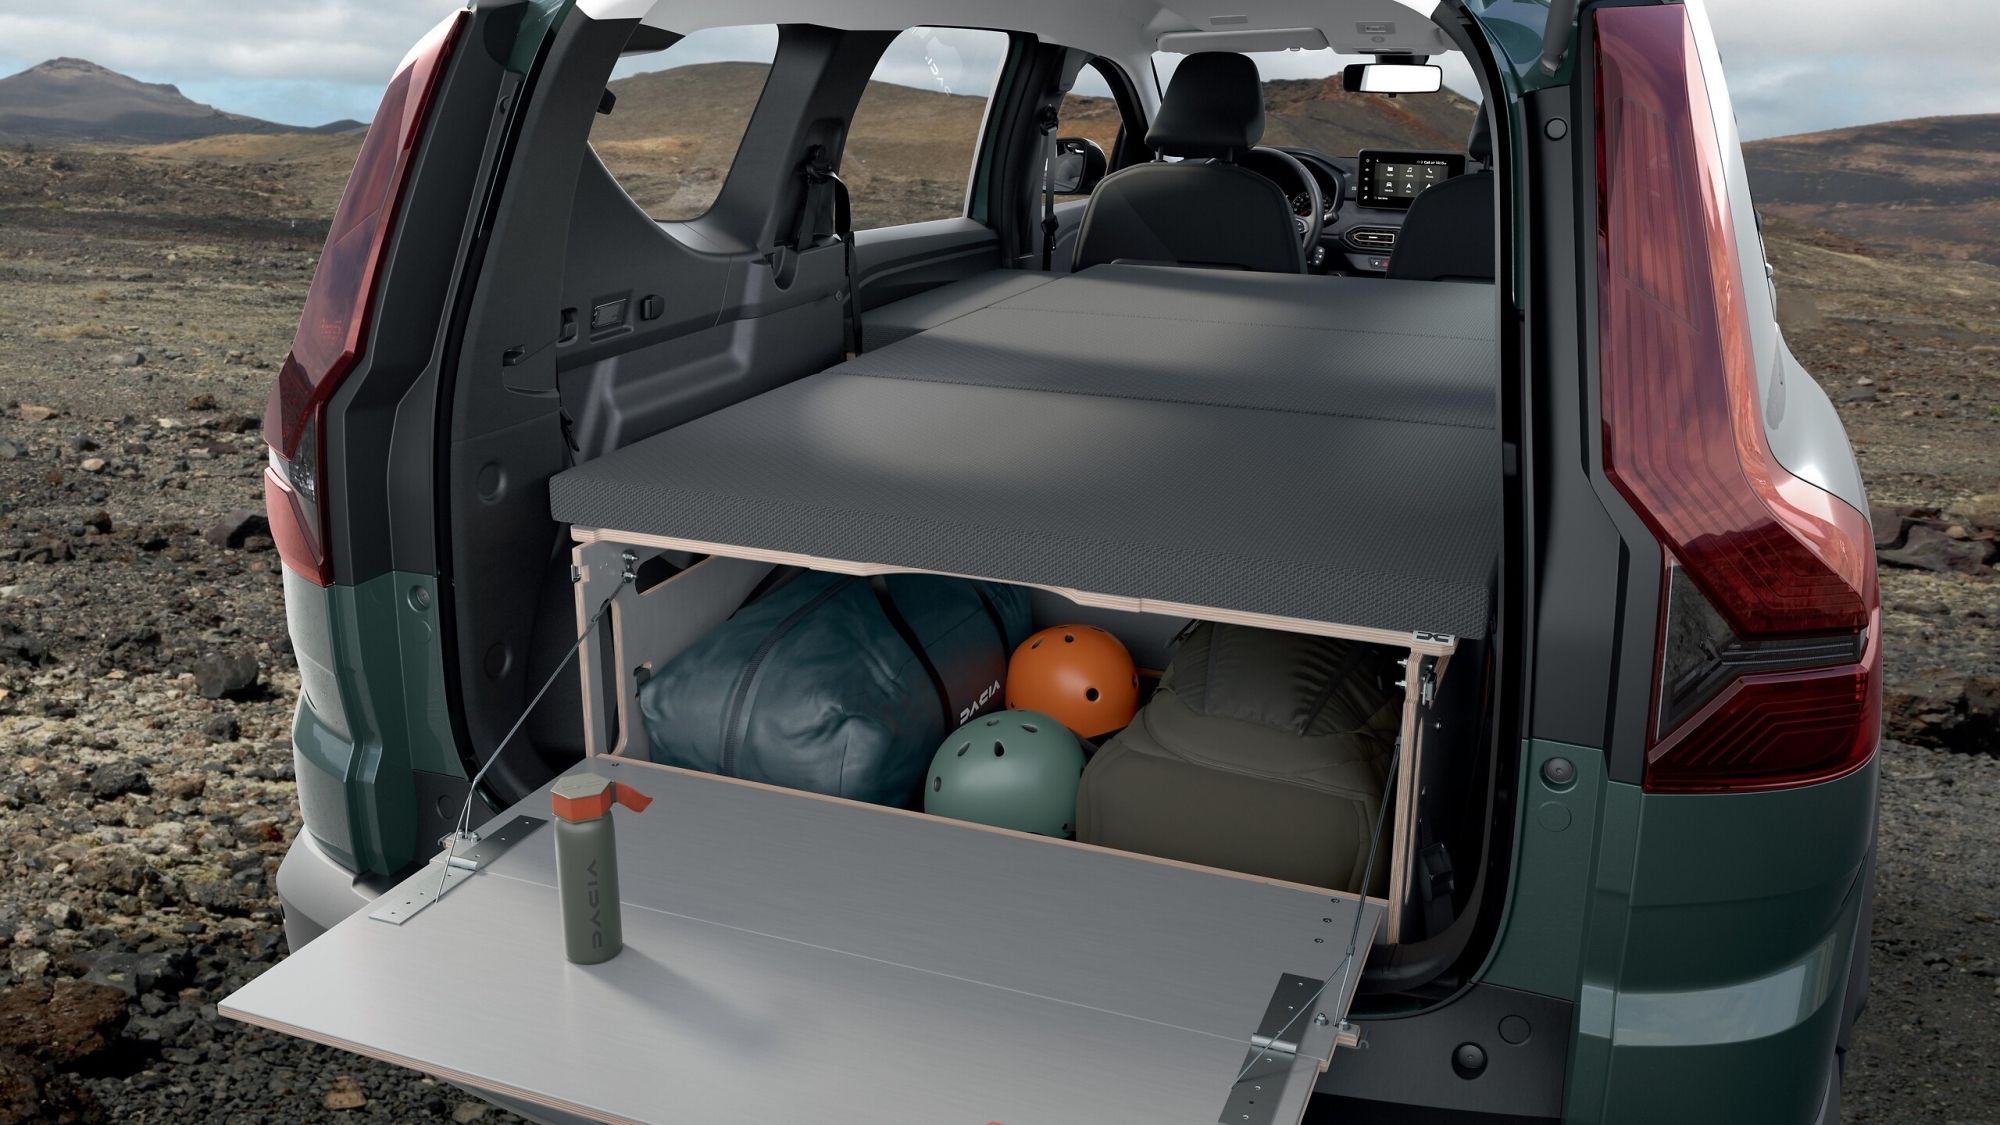 Kit Camper para furgonetas pequeñas - Accesorios para Camper